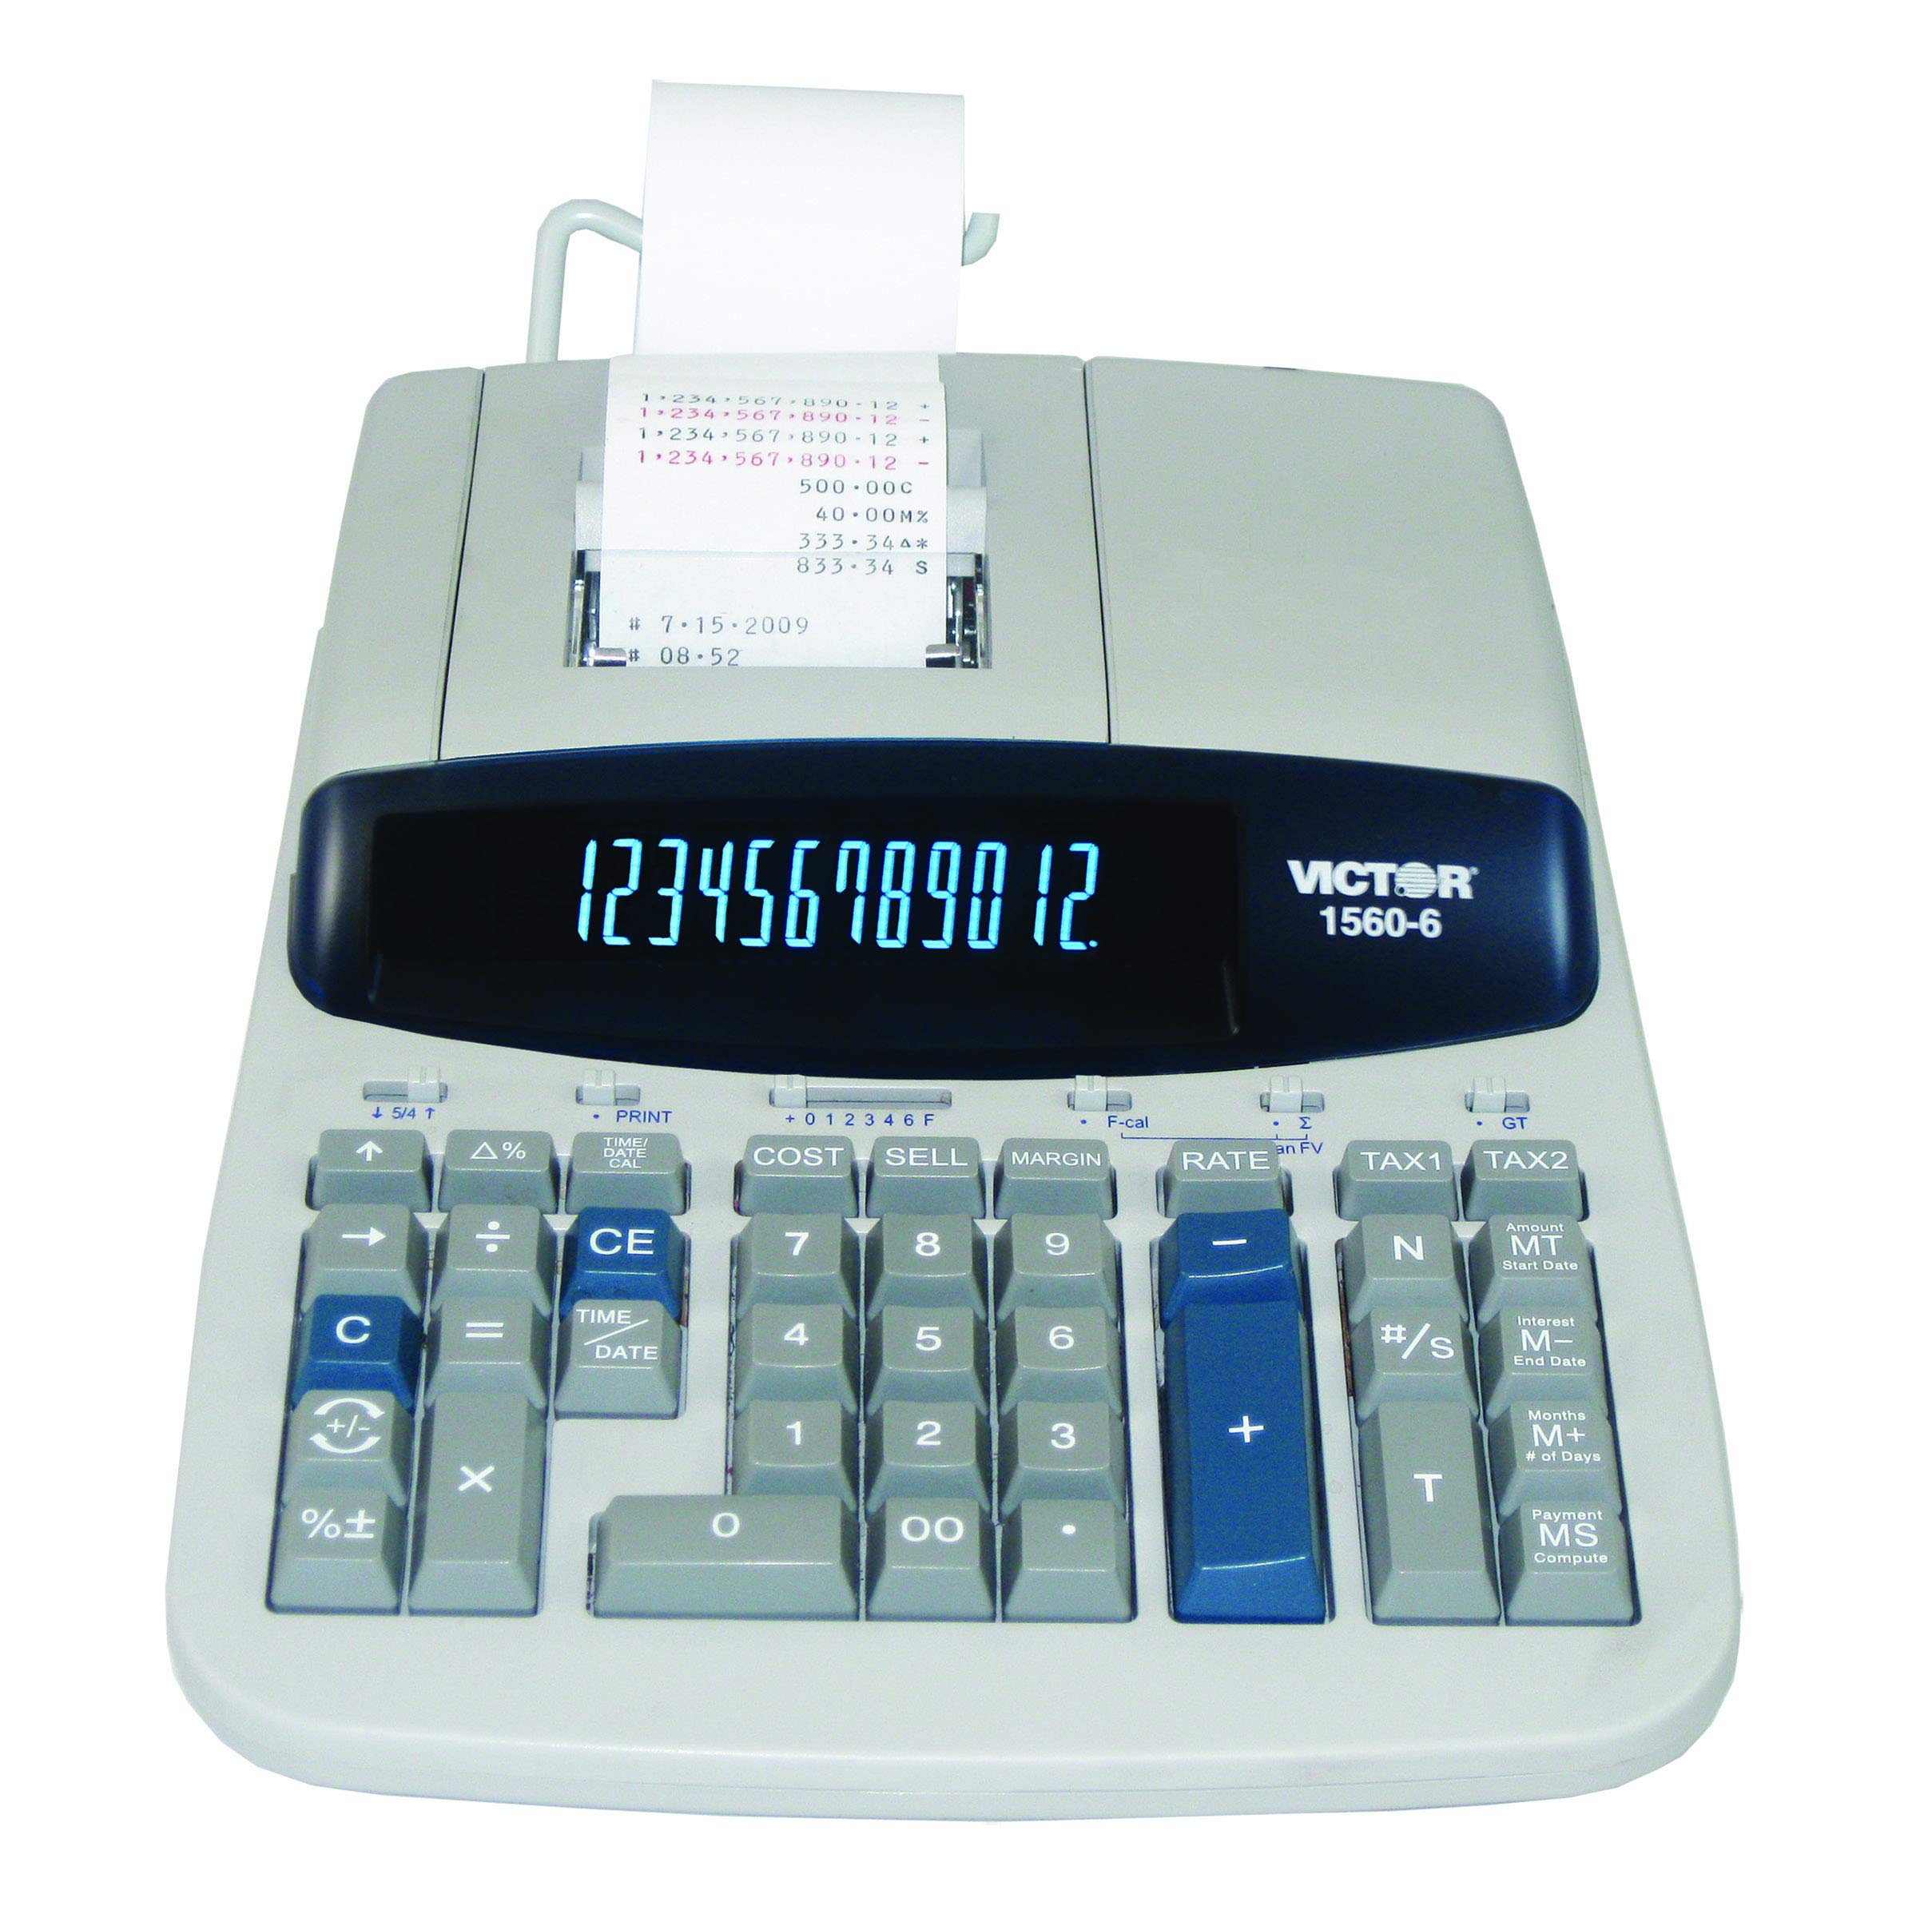 Victor 1560-6 12-cyfrowy kalkulator do druku komercyjne...